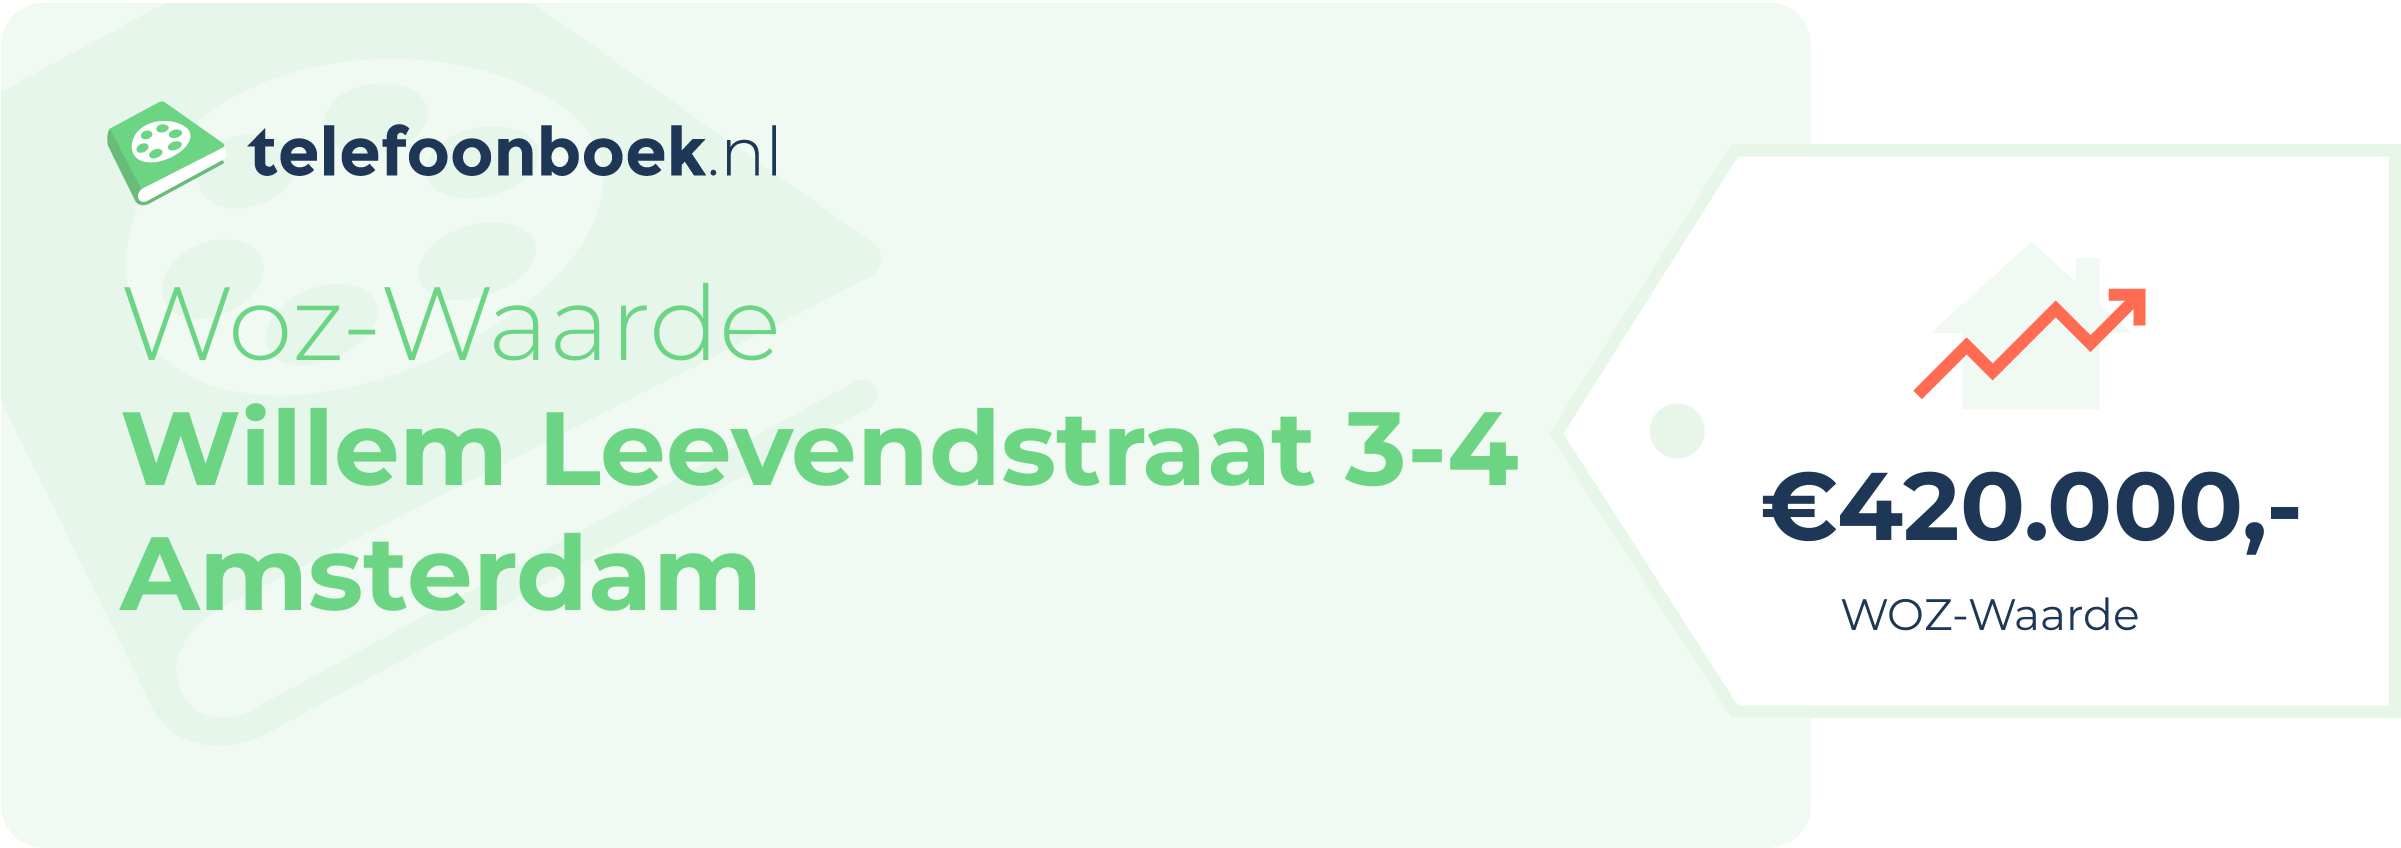 WOZ-waarde Willem Leevendstraat 3-4 Amsterdam